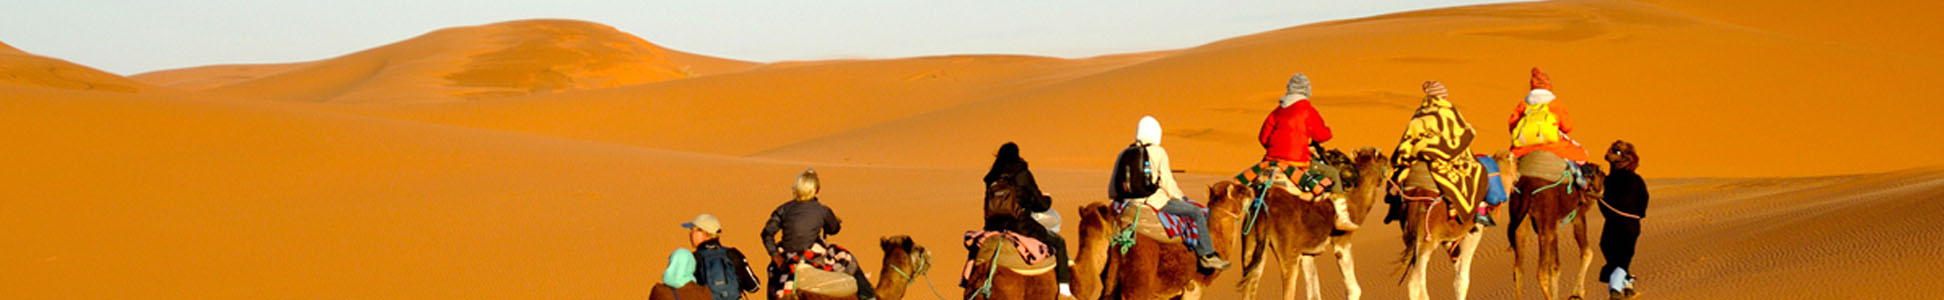 roteiros em marrocos, marrocos turismo, marrocos viagem, pacote marrocos, marrocos cidades, viajes al desierto marruecos